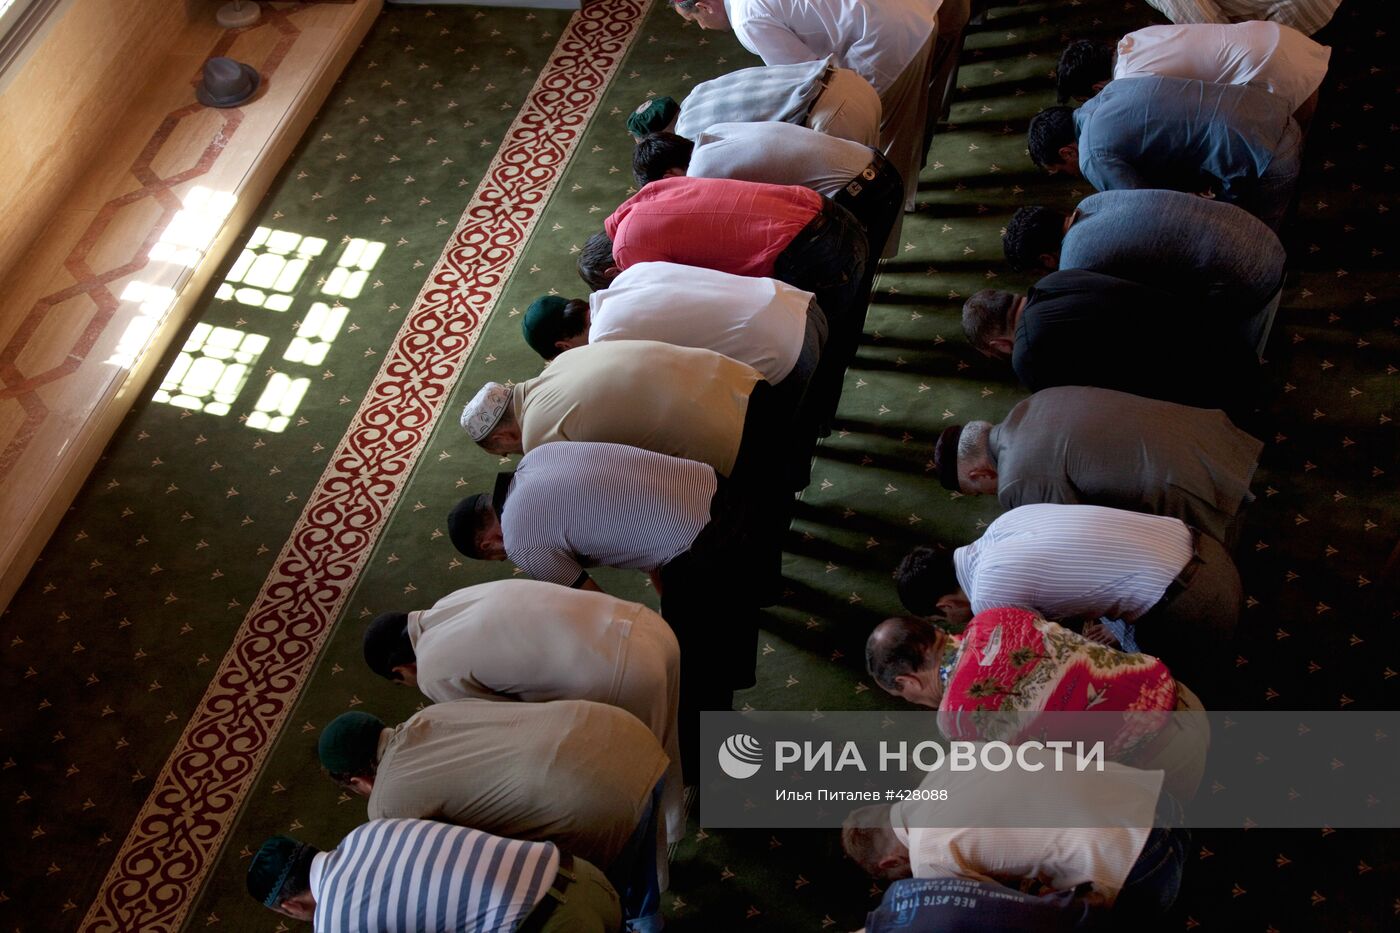 Центральная мечеть имени Ахмада Кадырова в Грозном